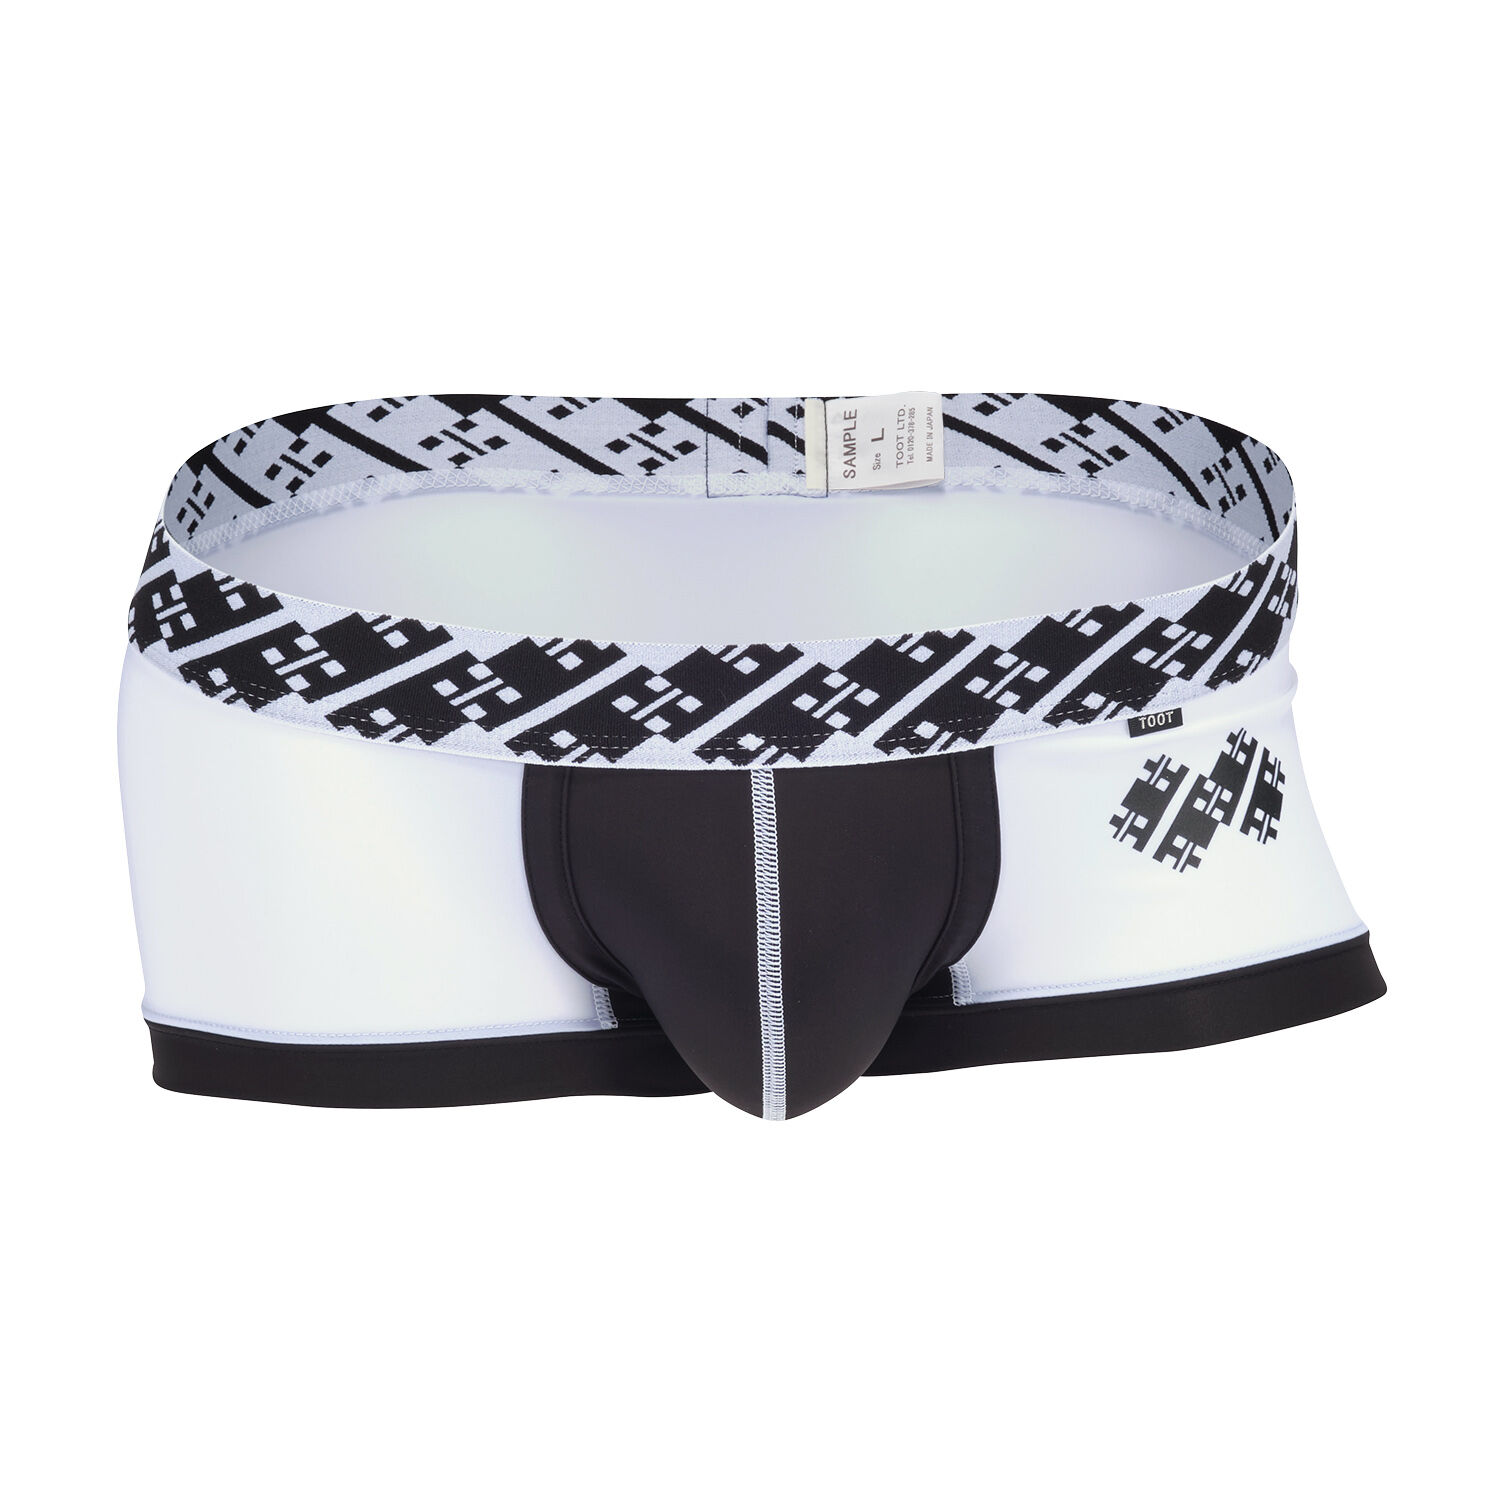 BOXER | Men's Underwear brand TOOT official website